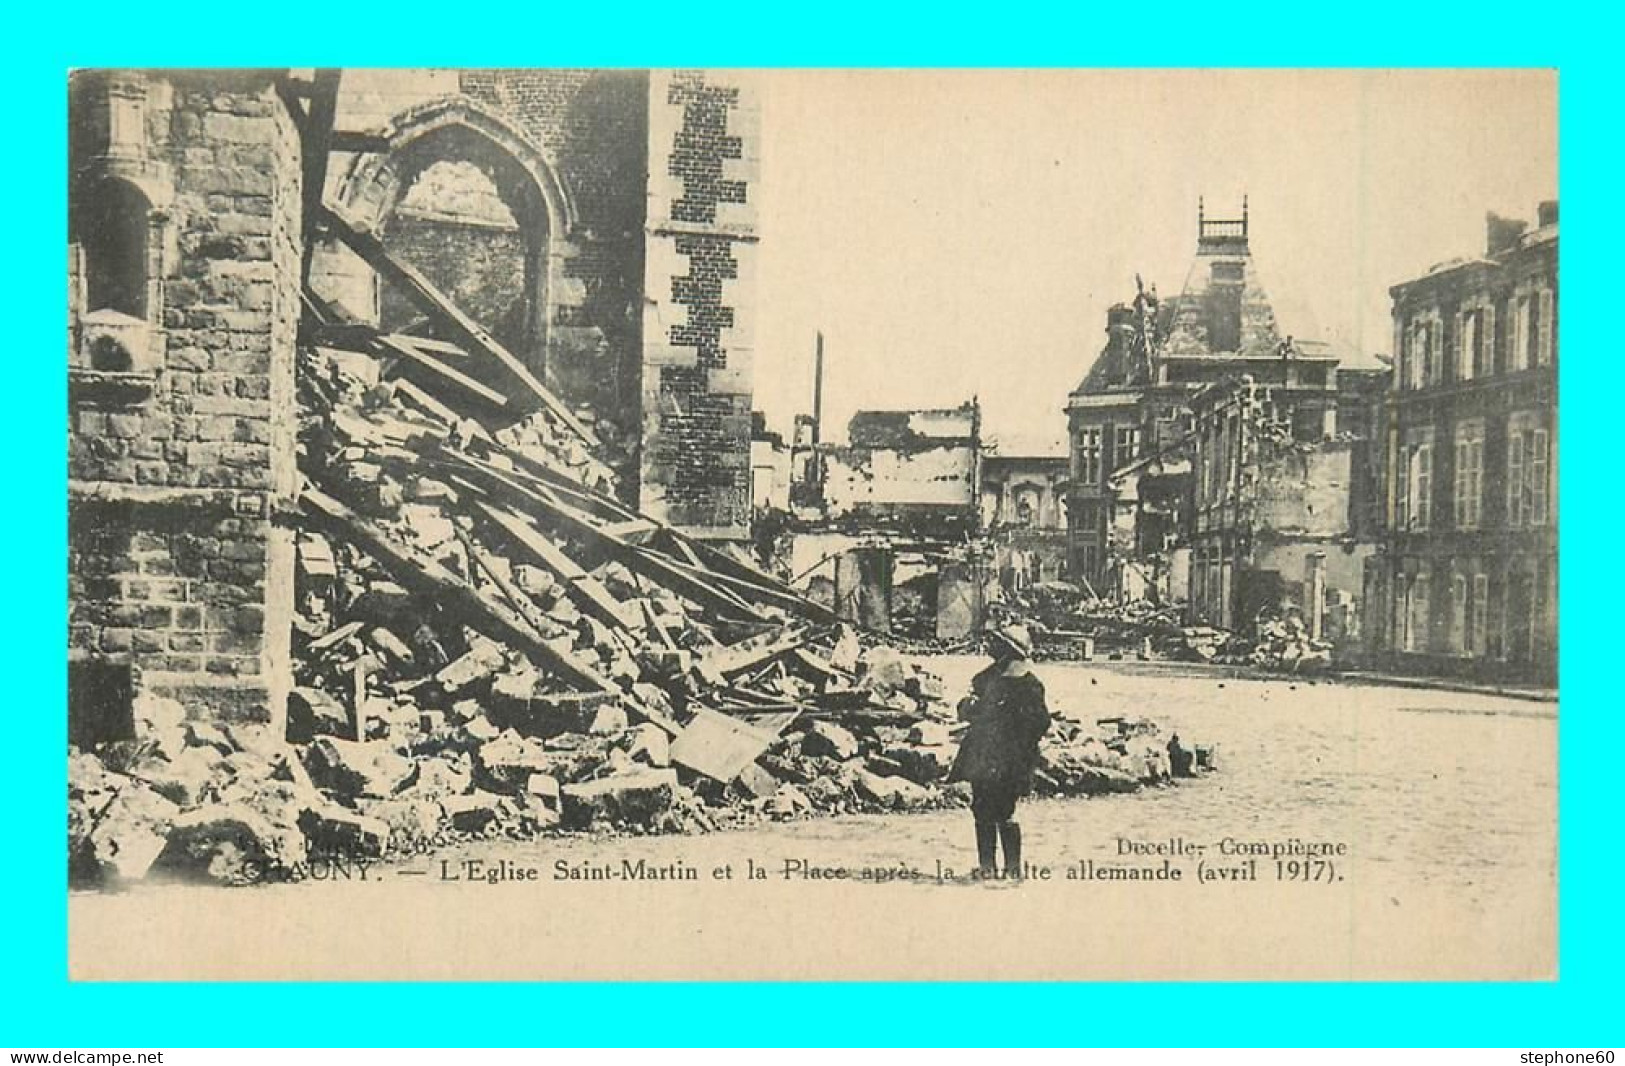 A903 / 377 02 - CHAUNY Eglise St Martin Et Place Apres La Retraite Allemande - Guerre 1914 - Chauny